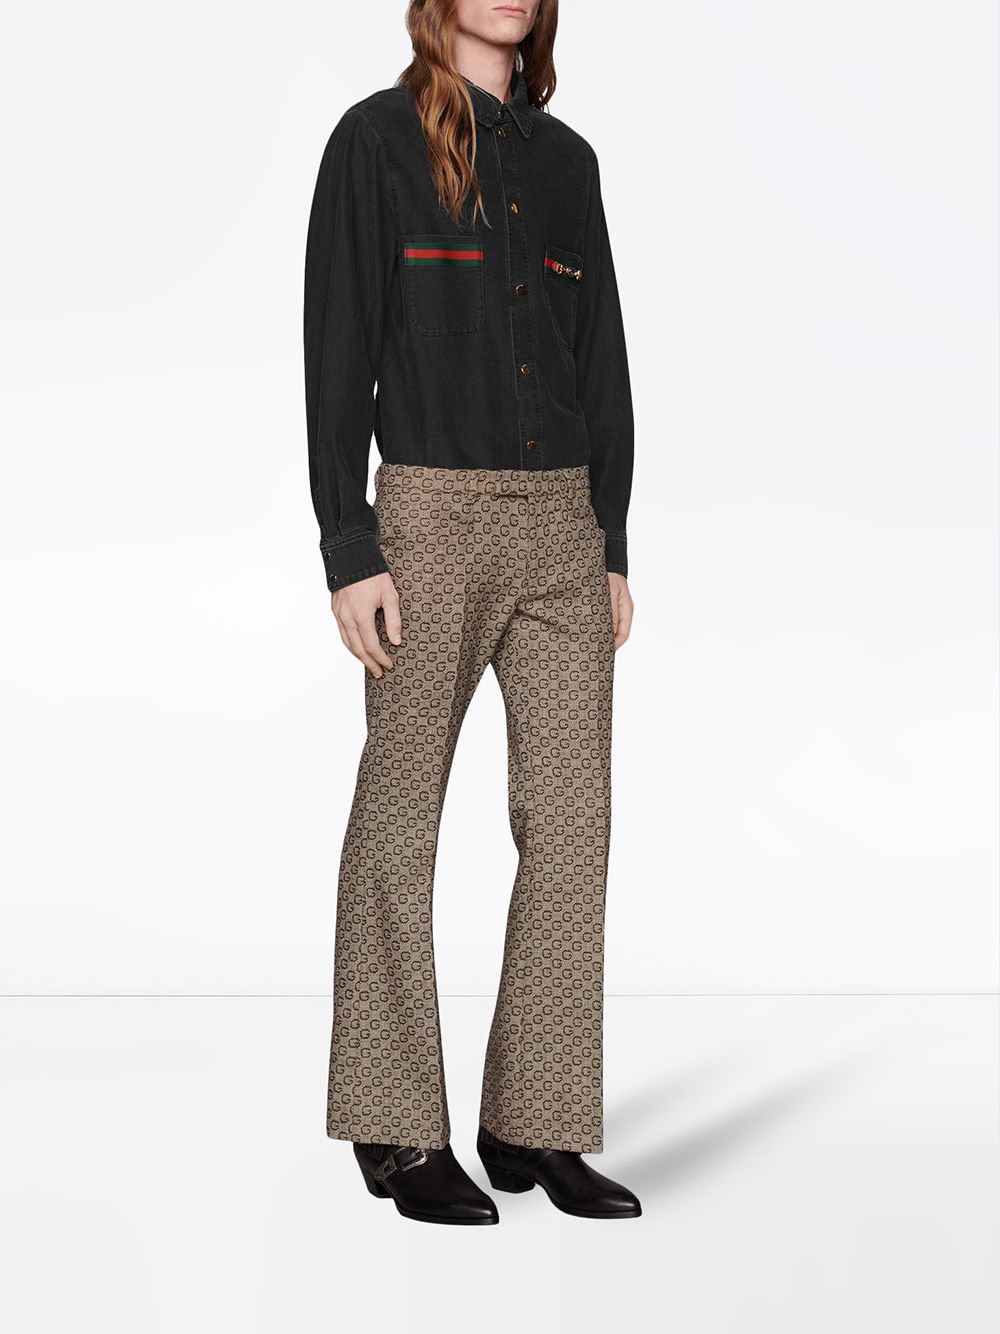 фото Gucci джинсовая рубашка с отделкой web